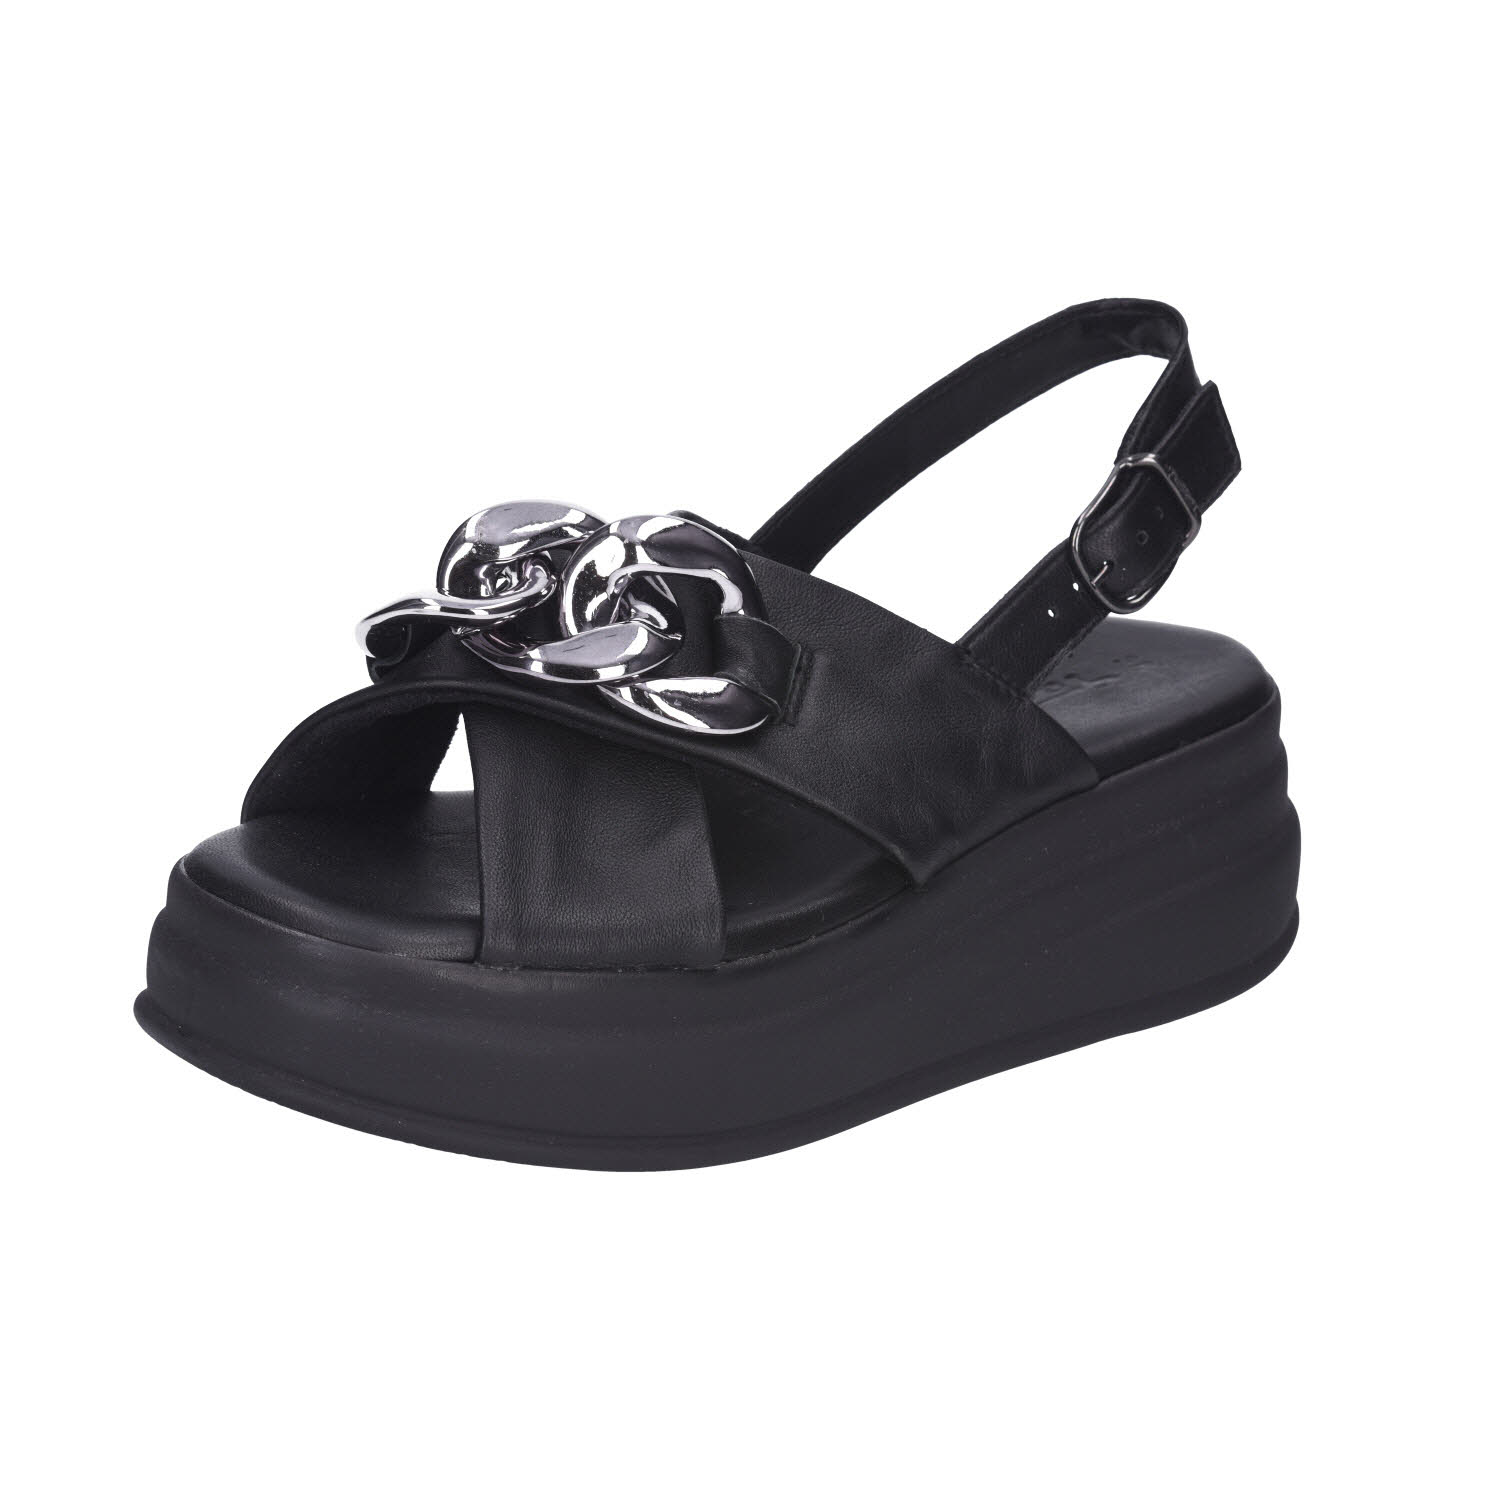 Tamaris Platform Sandals Black Leather schwarz